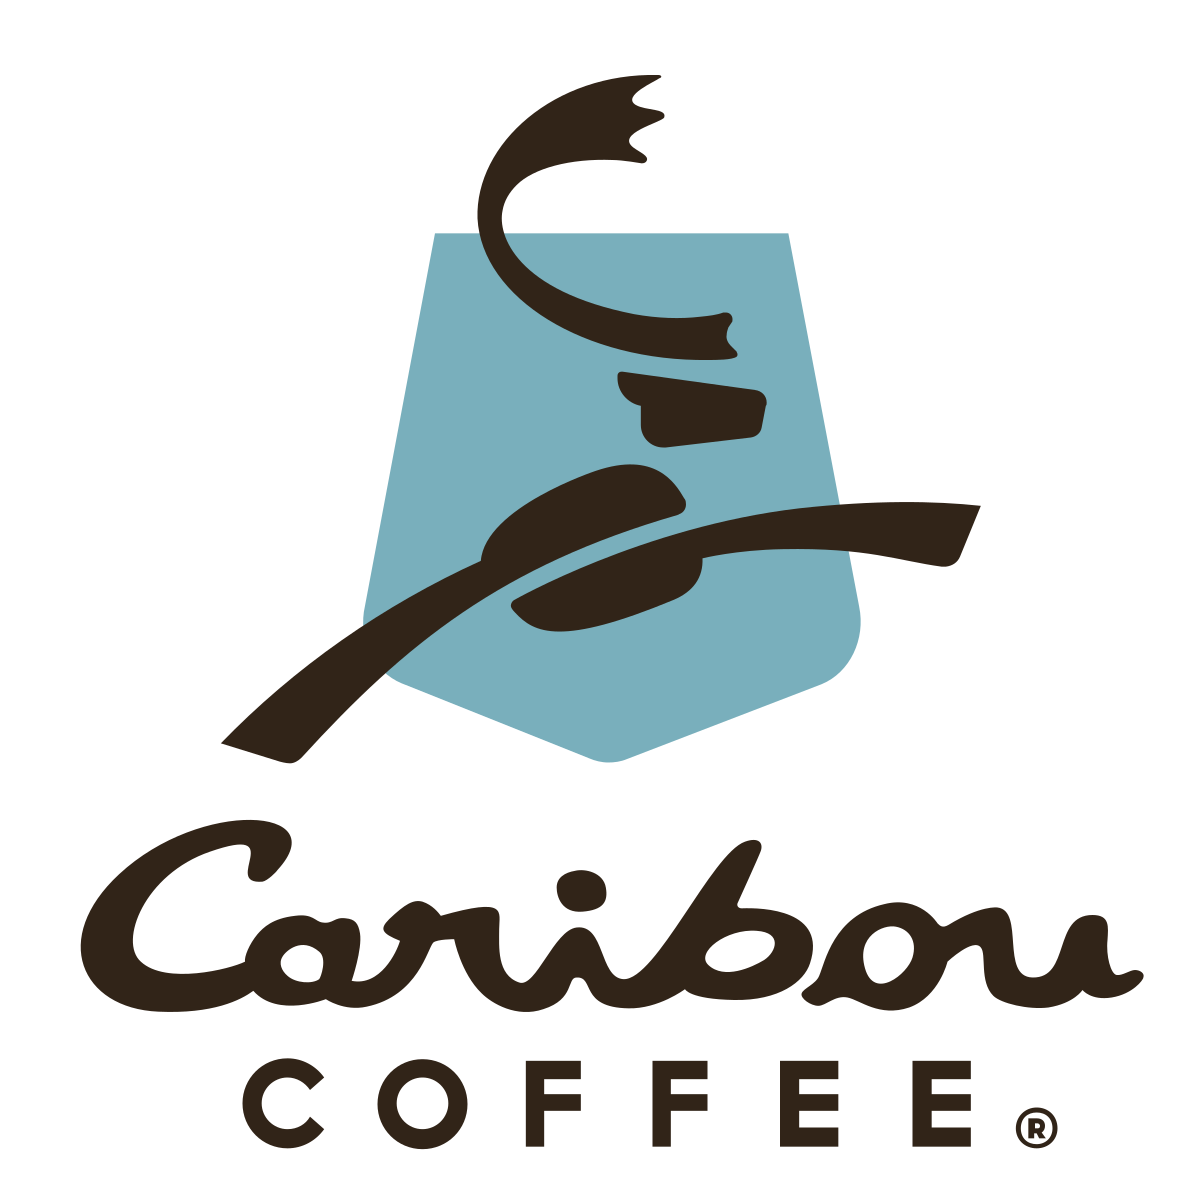 caribou coffee